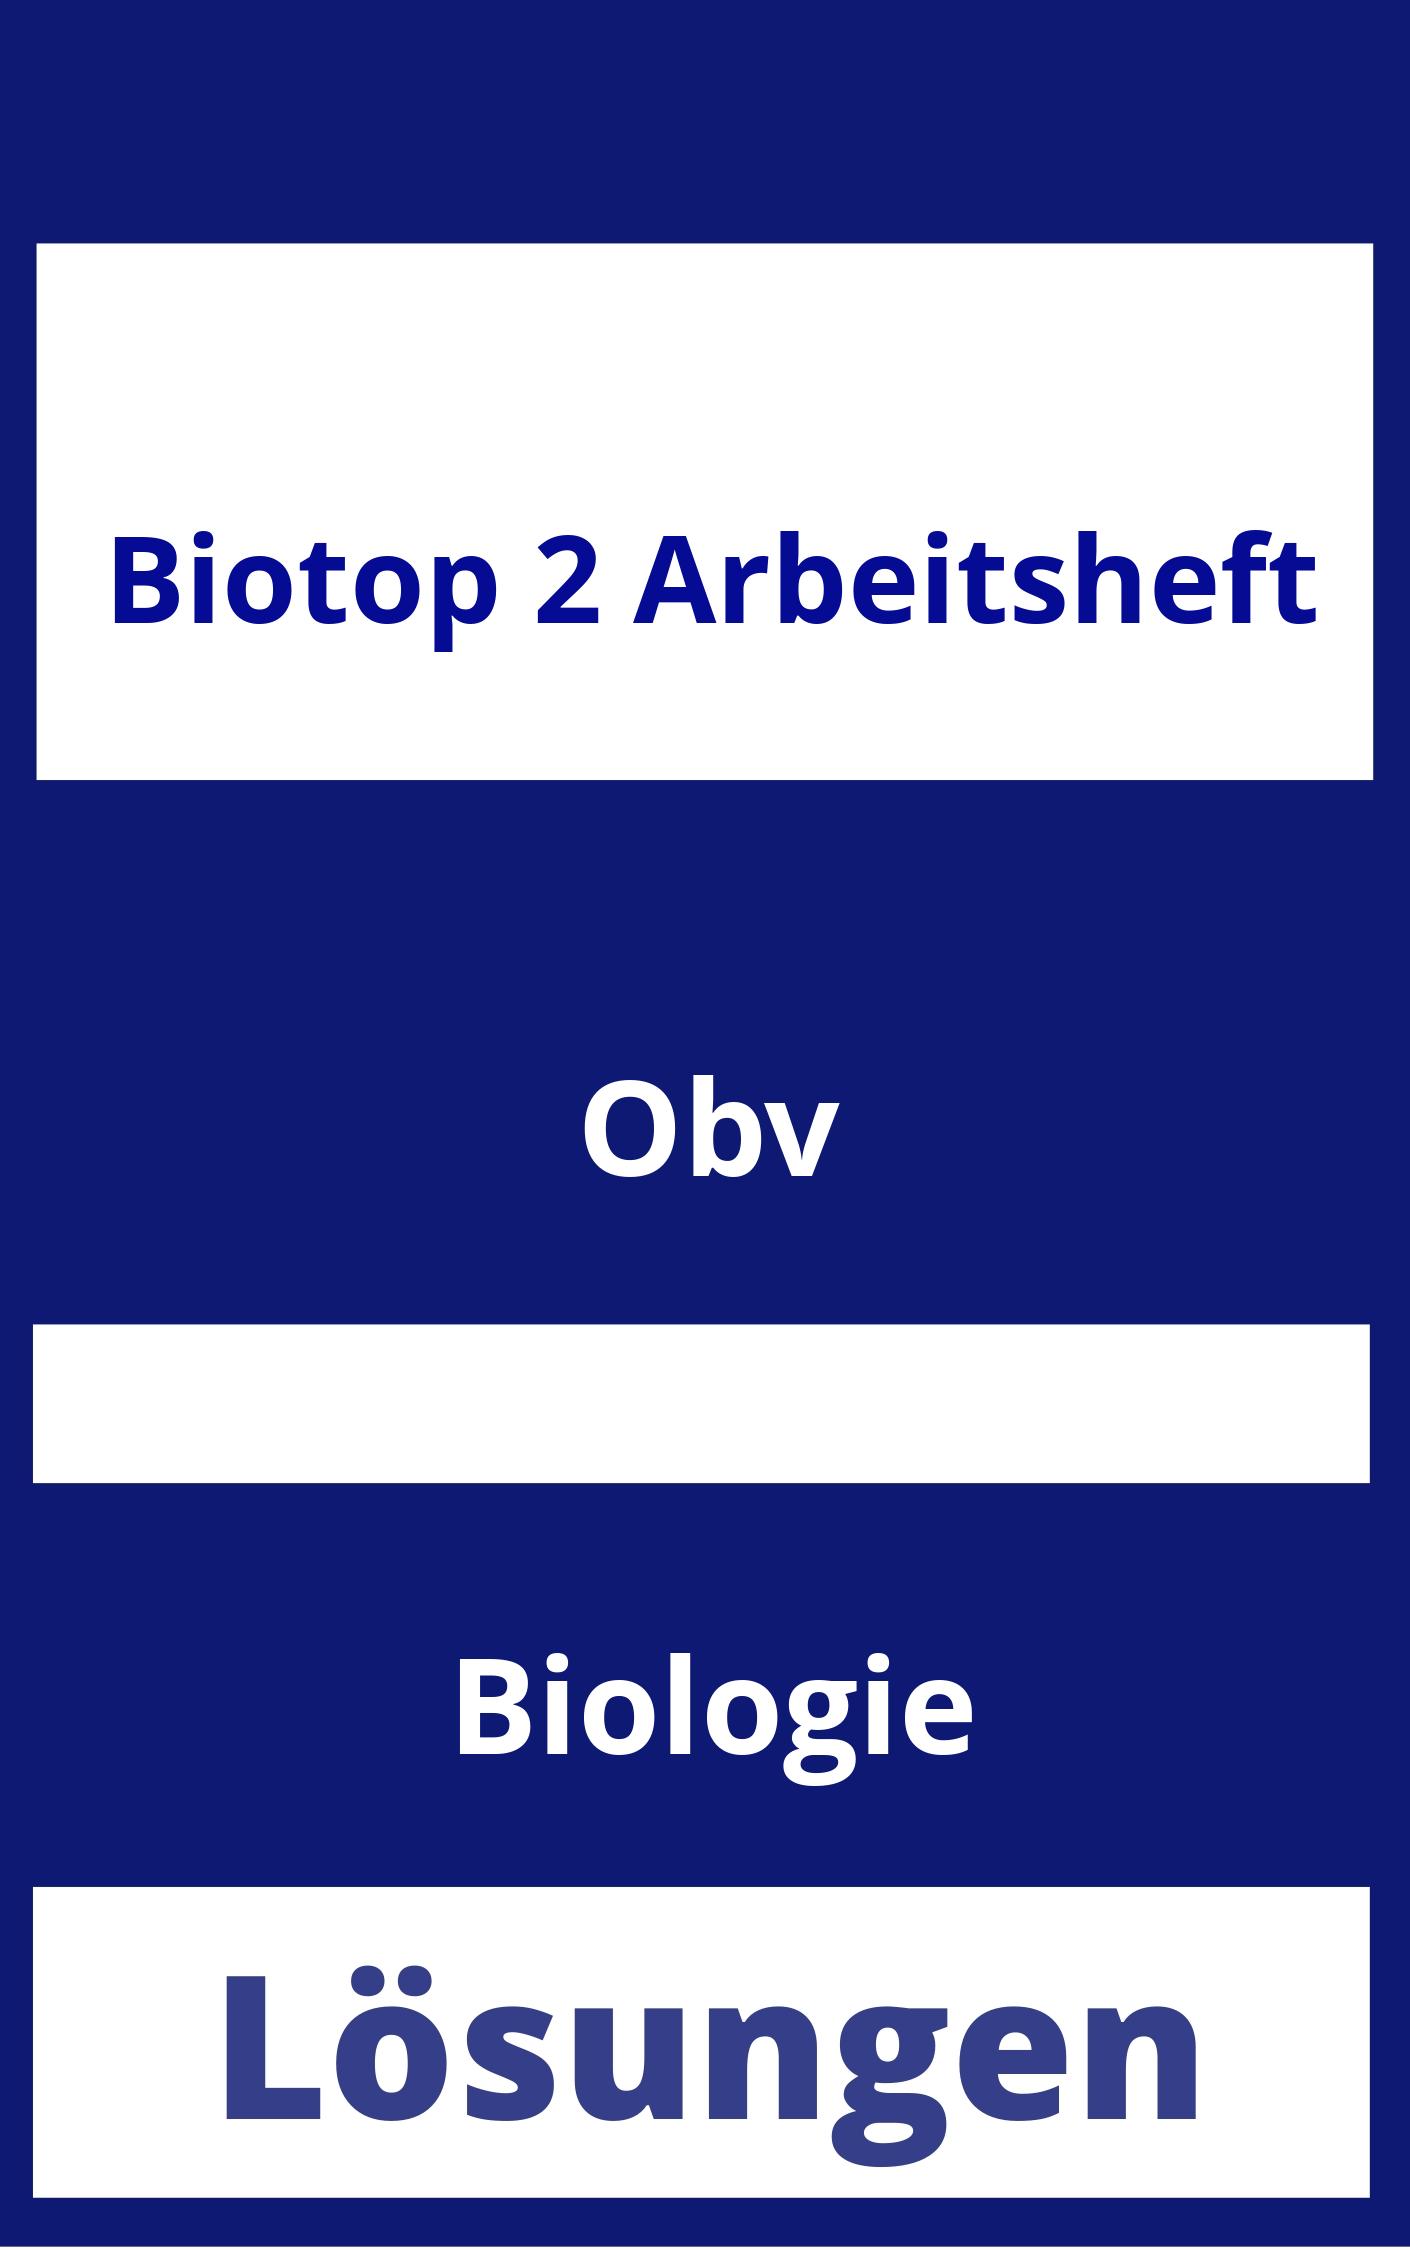 BioTop 2 Arbeitsheft Lösungen PDF